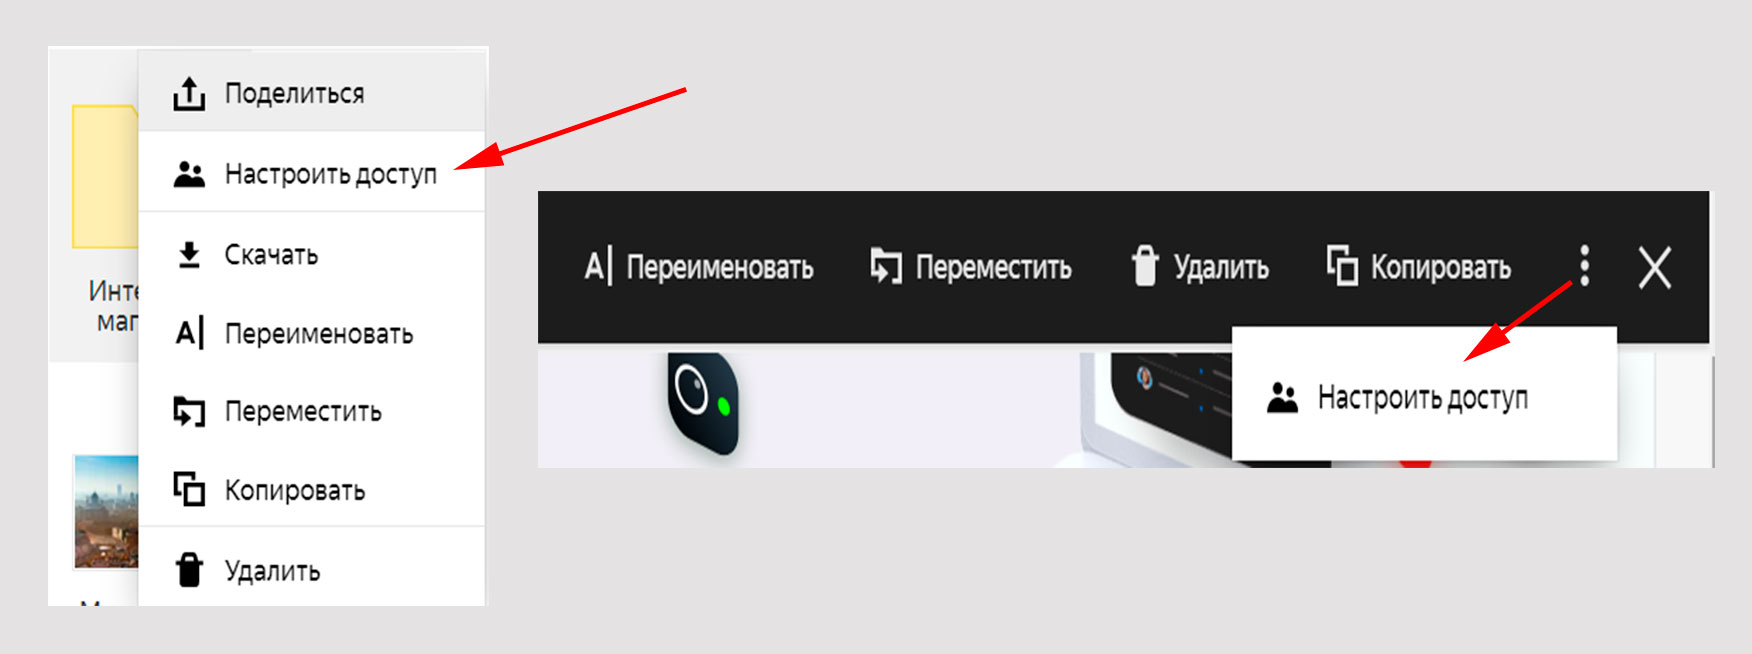 Яндекс Диск: общий доступ к папке.